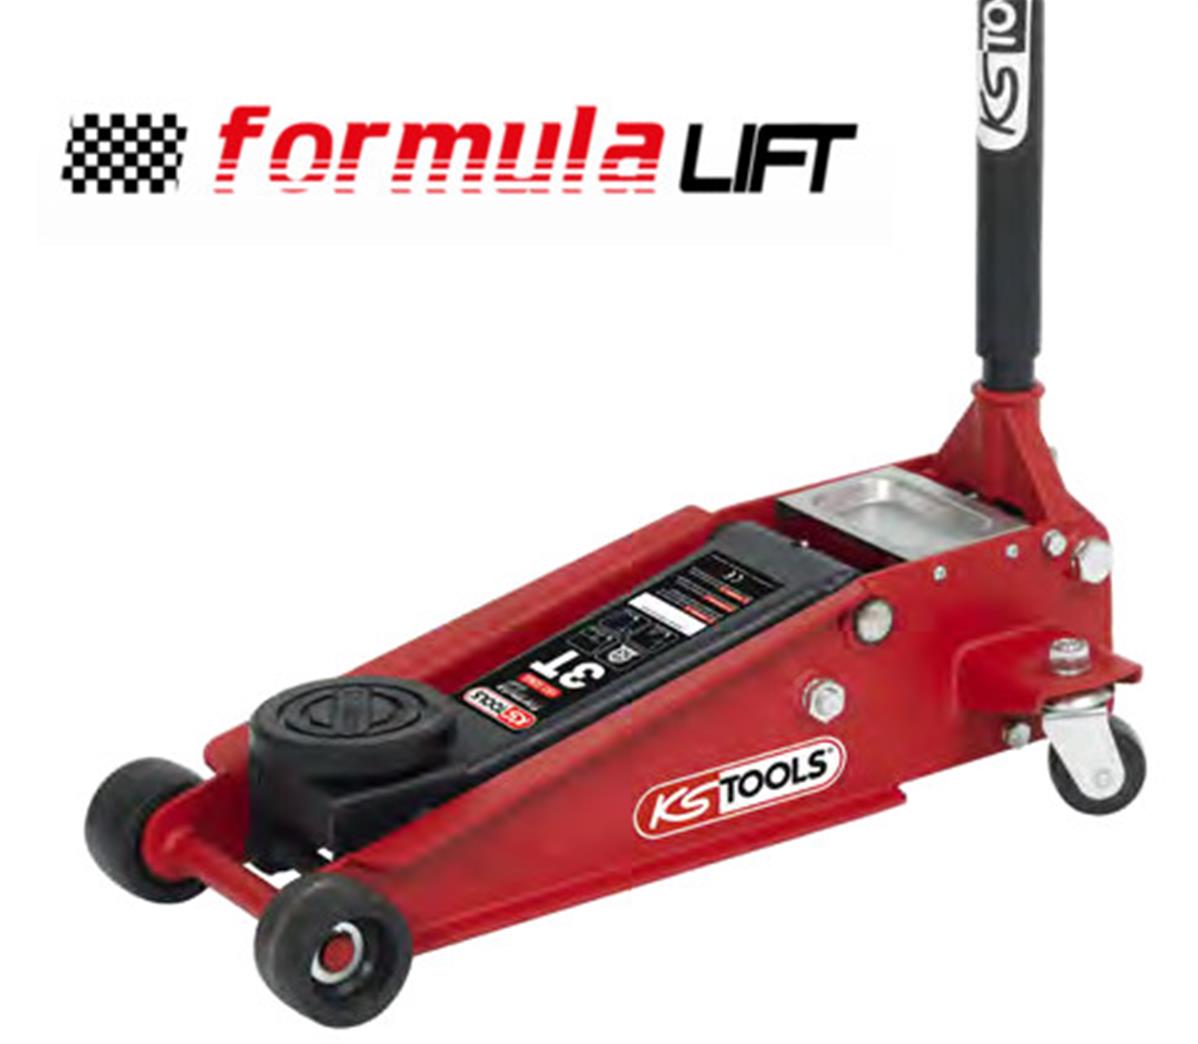 KSTools Cric hydraulique acier FORMULA lift 3T - Outil Maxi Pro